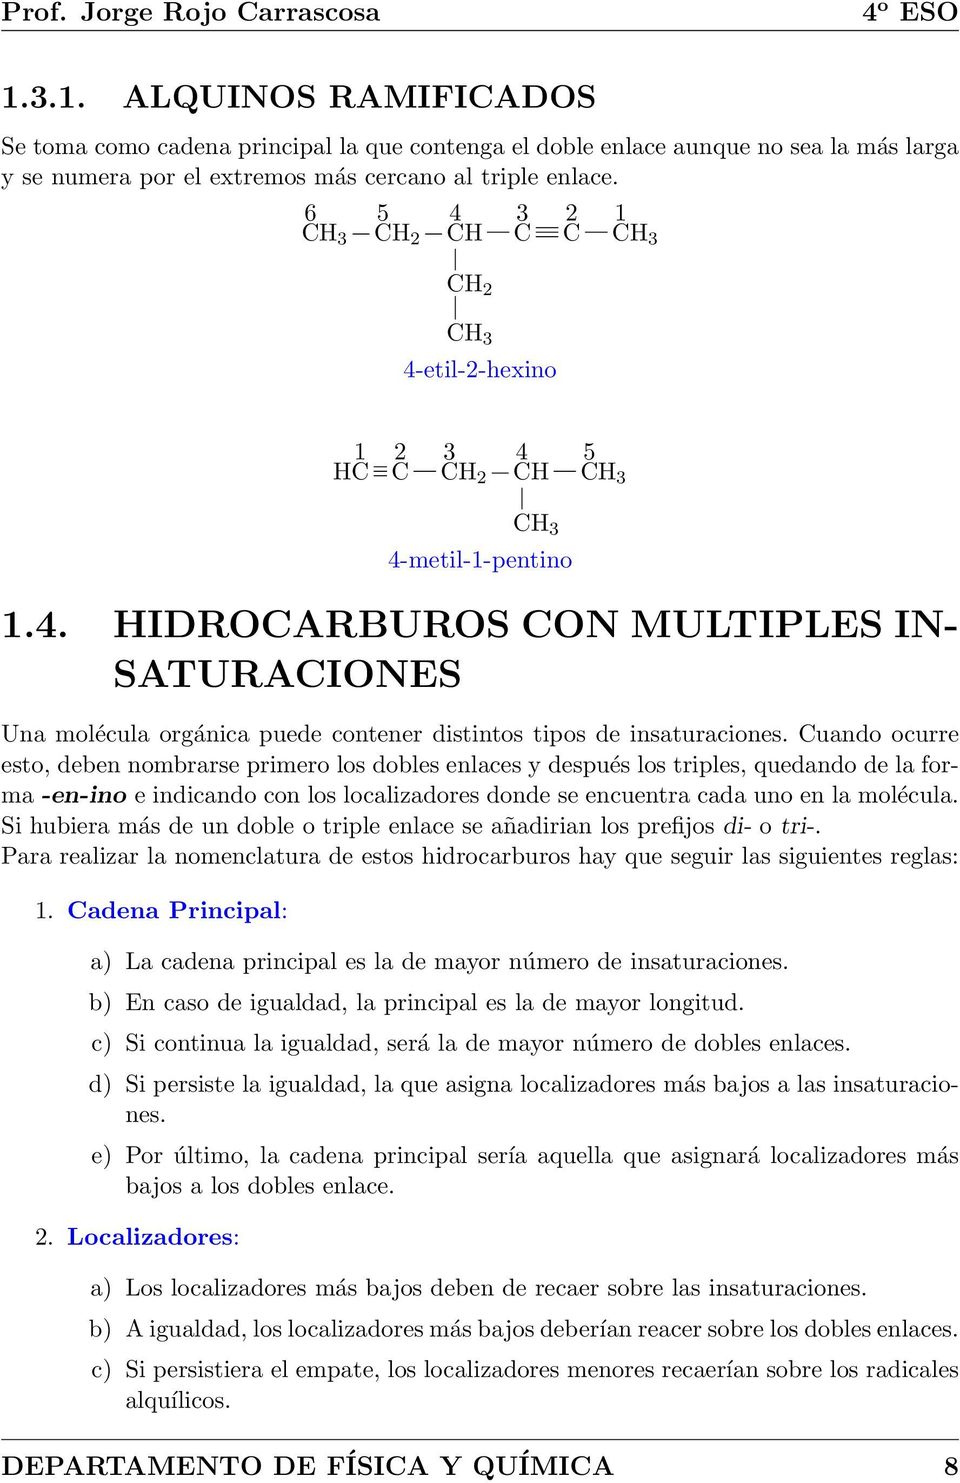 6 5 2 4 4-etil-2-hexino 3 2 1 1 2 3 4 5 4-metil-1-pentino 1.4. IDRARBURS N MULTIPLES IN- SATURAINES Una molécula orgánica puede contener distintos tipos de insaturaciones.